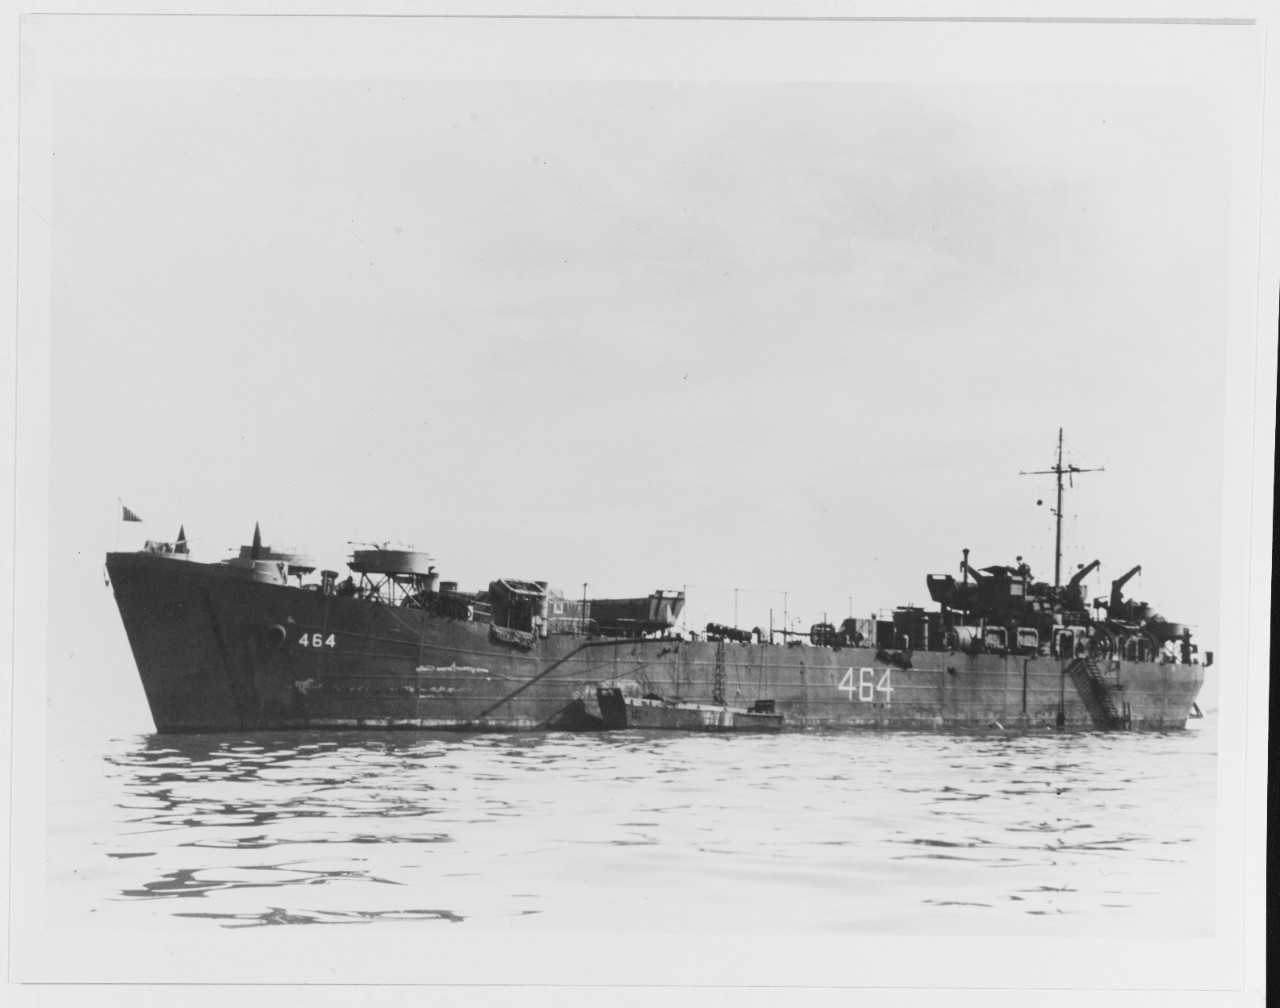 USS LST-464